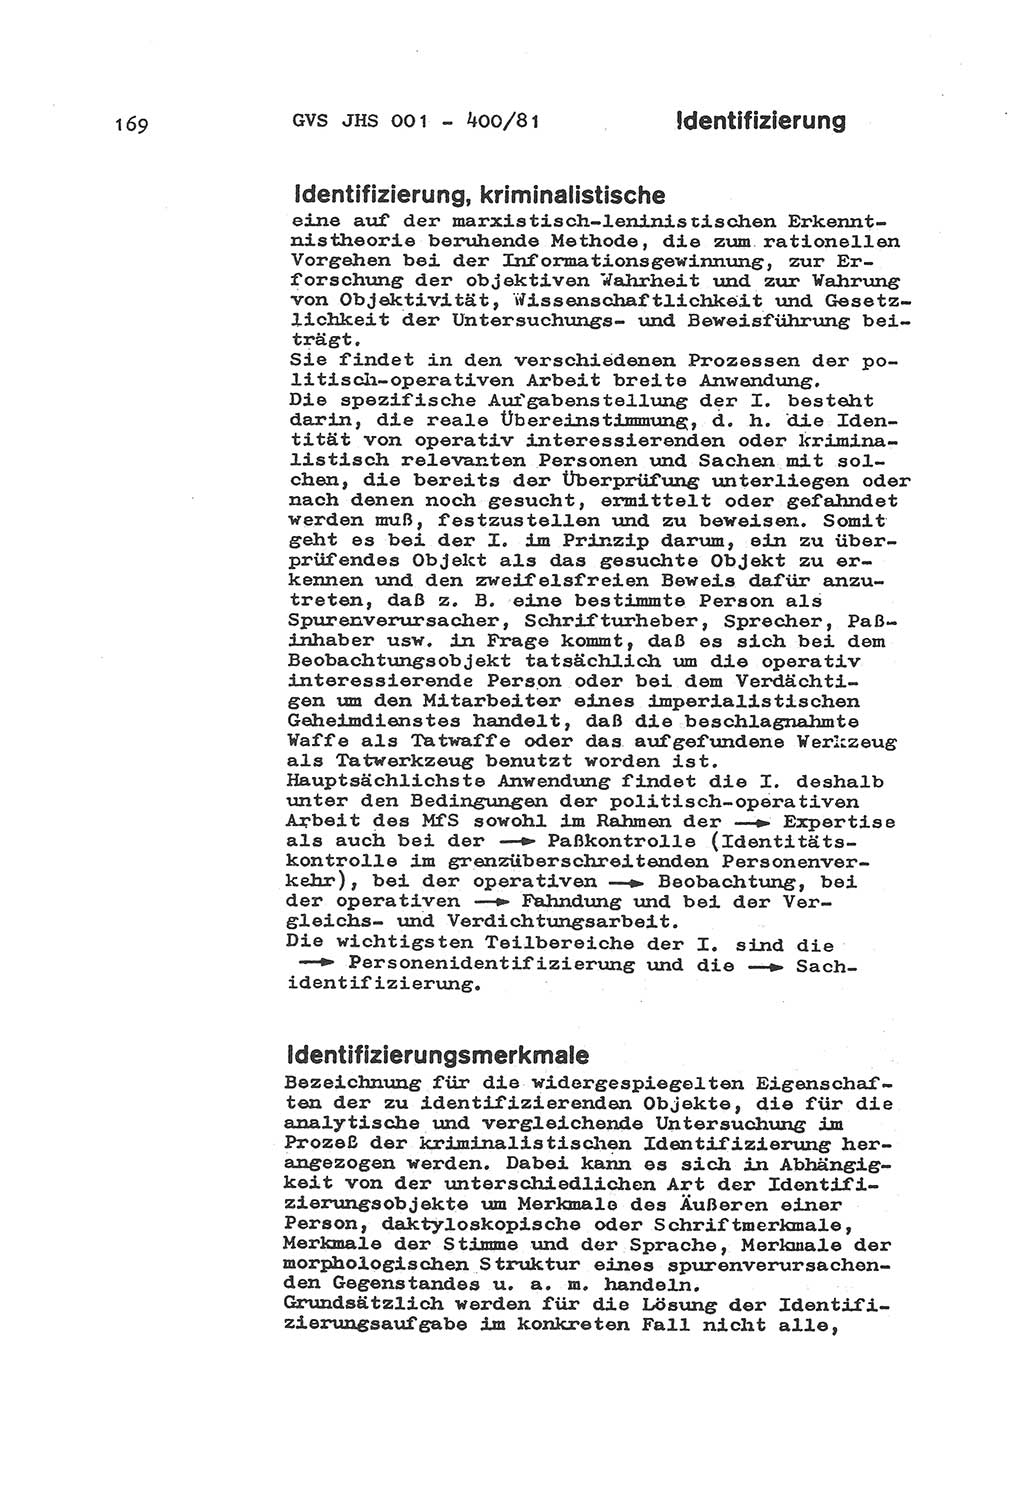 Wörterbuch der politisch-operativen Arbeit, Ministerium für Staatssicherheit (MfS) [Deutsche Demokratische Republik (DDR)], Juristische Hochschule (JHS), Geheime Verschlußsache (GVS) o001-400/81, Potsdam 1985, Blatt 169 (Wb. pol.-op. Arb. MfS DDR JHS GVS o001-400/81 1985, Bl. 169)